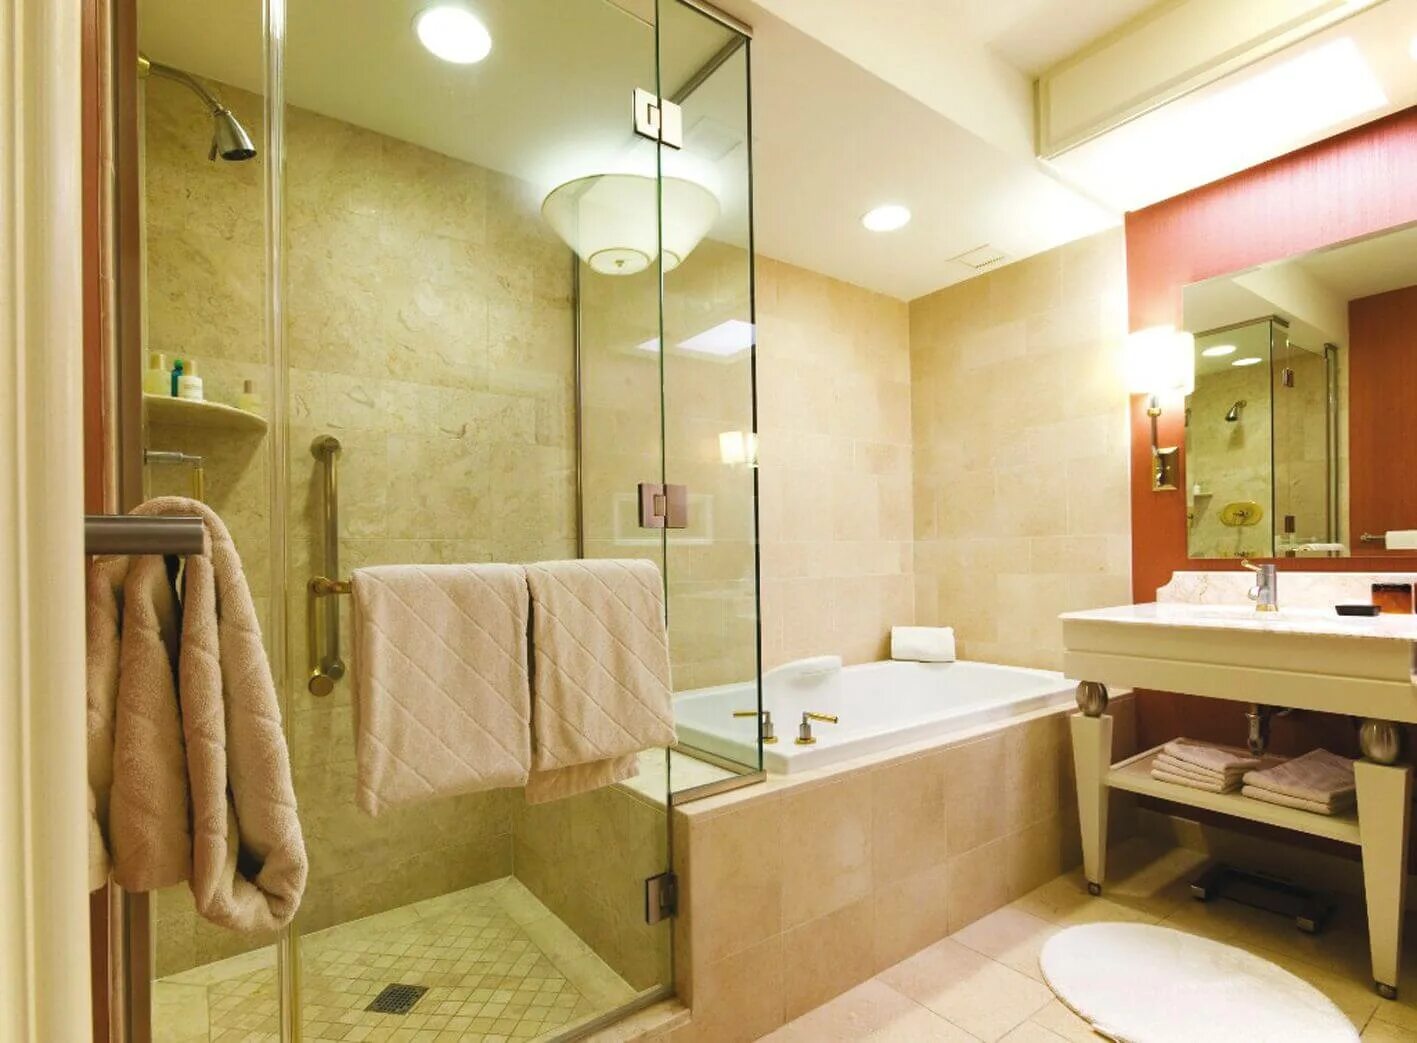 Освещение в ванной. Дизайн интерьера ванной комнаты. Ванная комната интерьер. Современное освещение в ванной комнате. Как правильно подобрать ванную